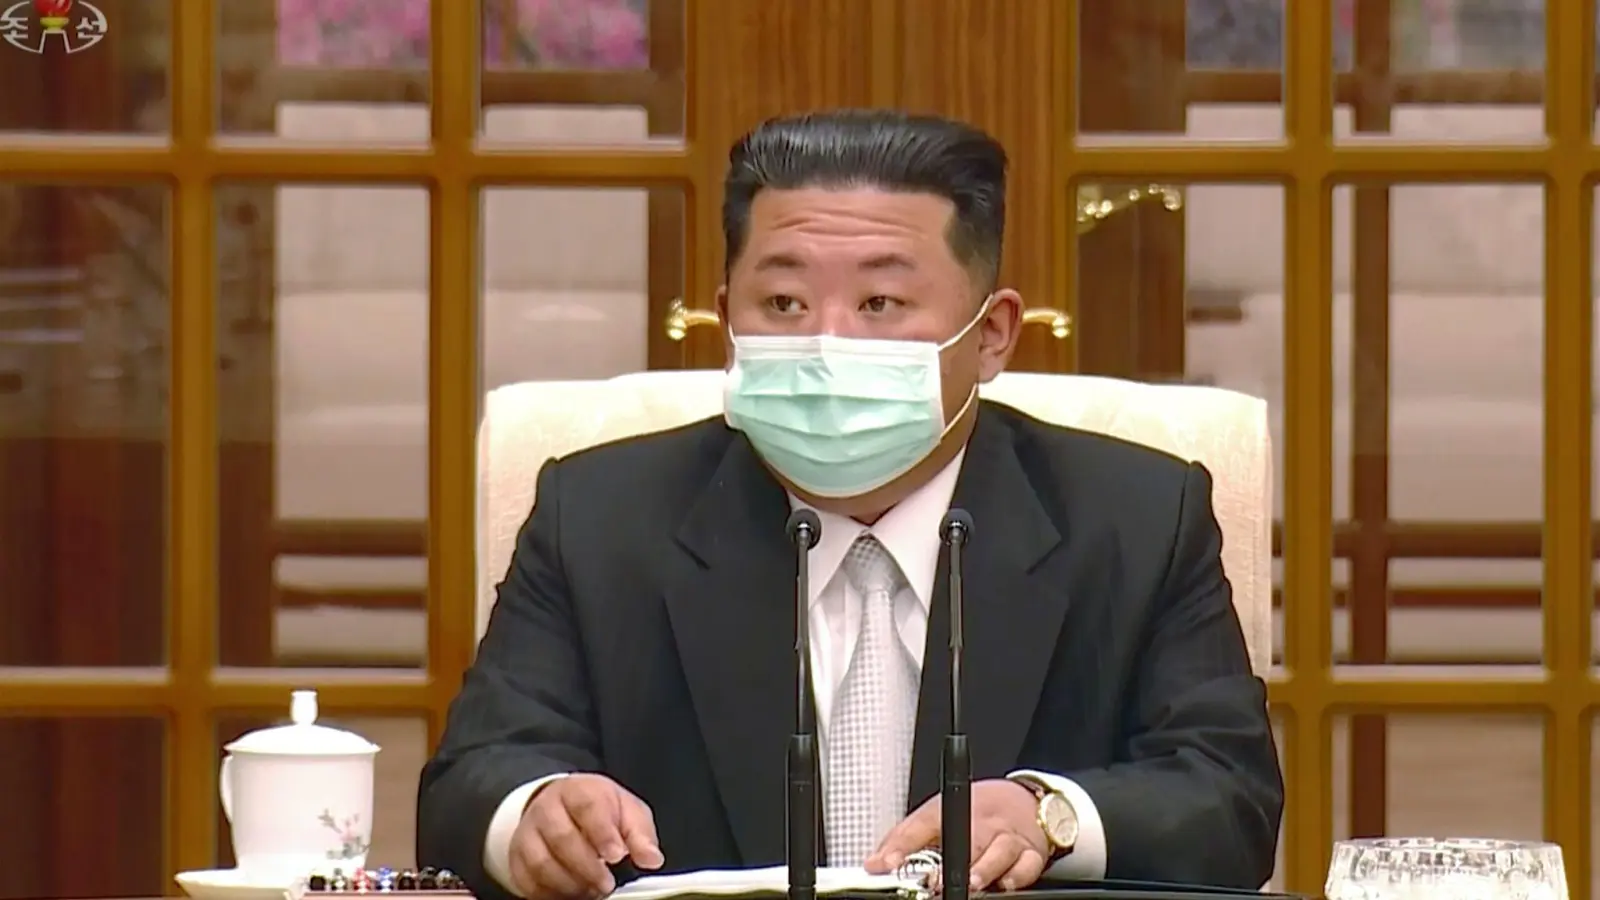 Nordkoreas Machthaber Kim Jong-un trägt während eines Treffens zum ersten Corona-Fall im Land einen Mund-Nasen-Schutz. (Foto: Uncredited/KRT/AP/dpa)